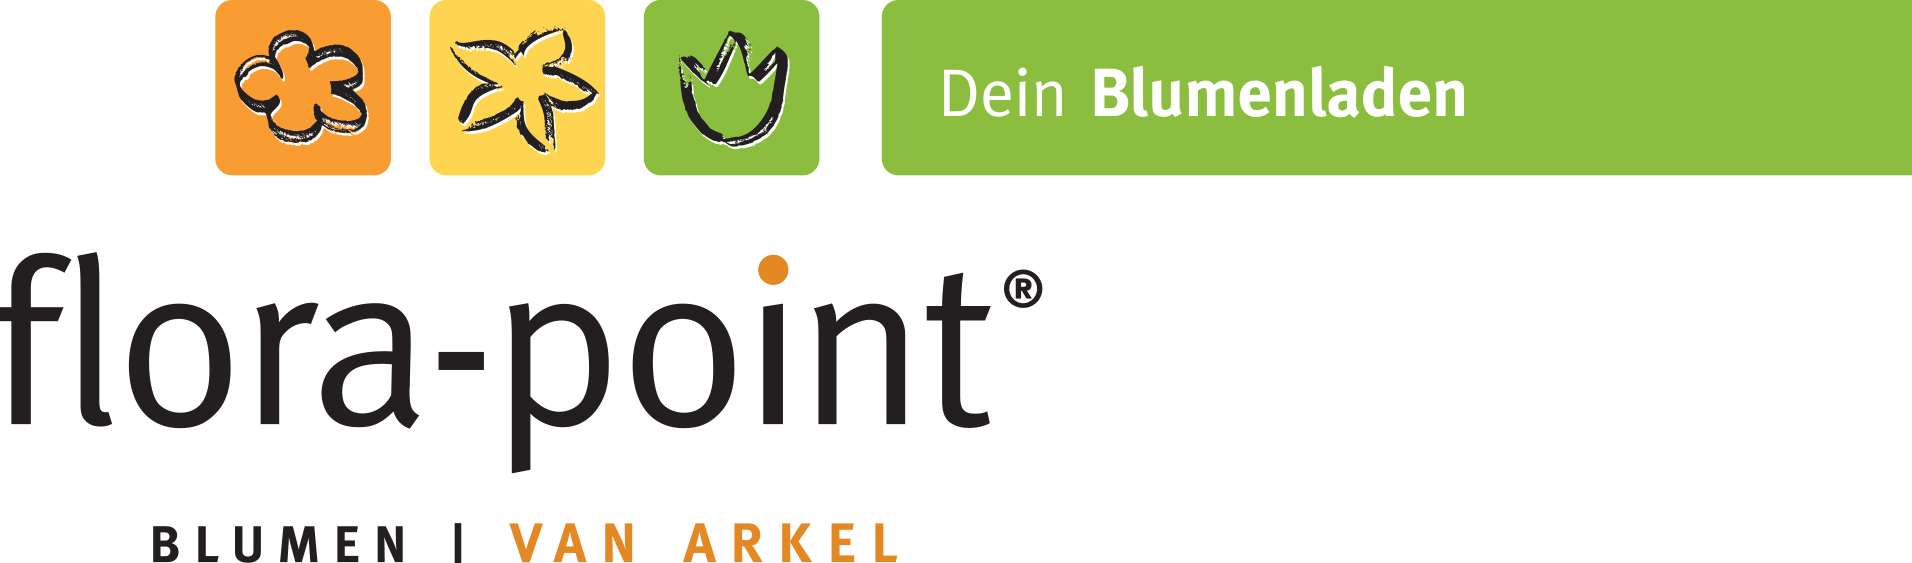 Bild 1 flora-point Blumenshop GmbH in Unna